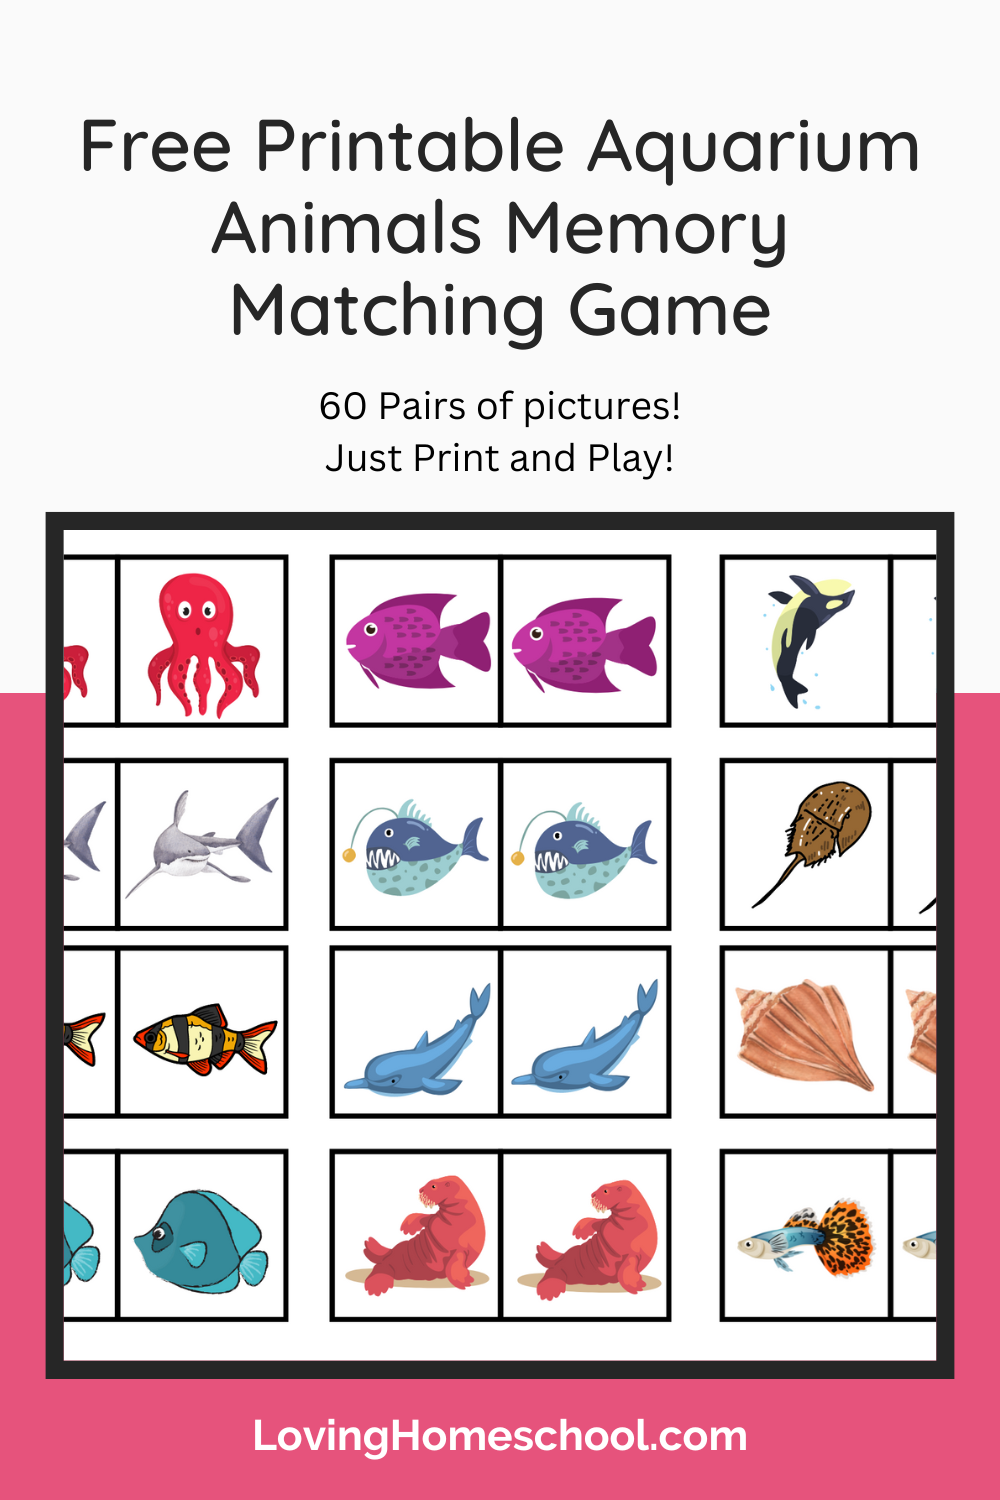 Free Printable Aquarium Animals Memory Matching Game Pinterest Pin